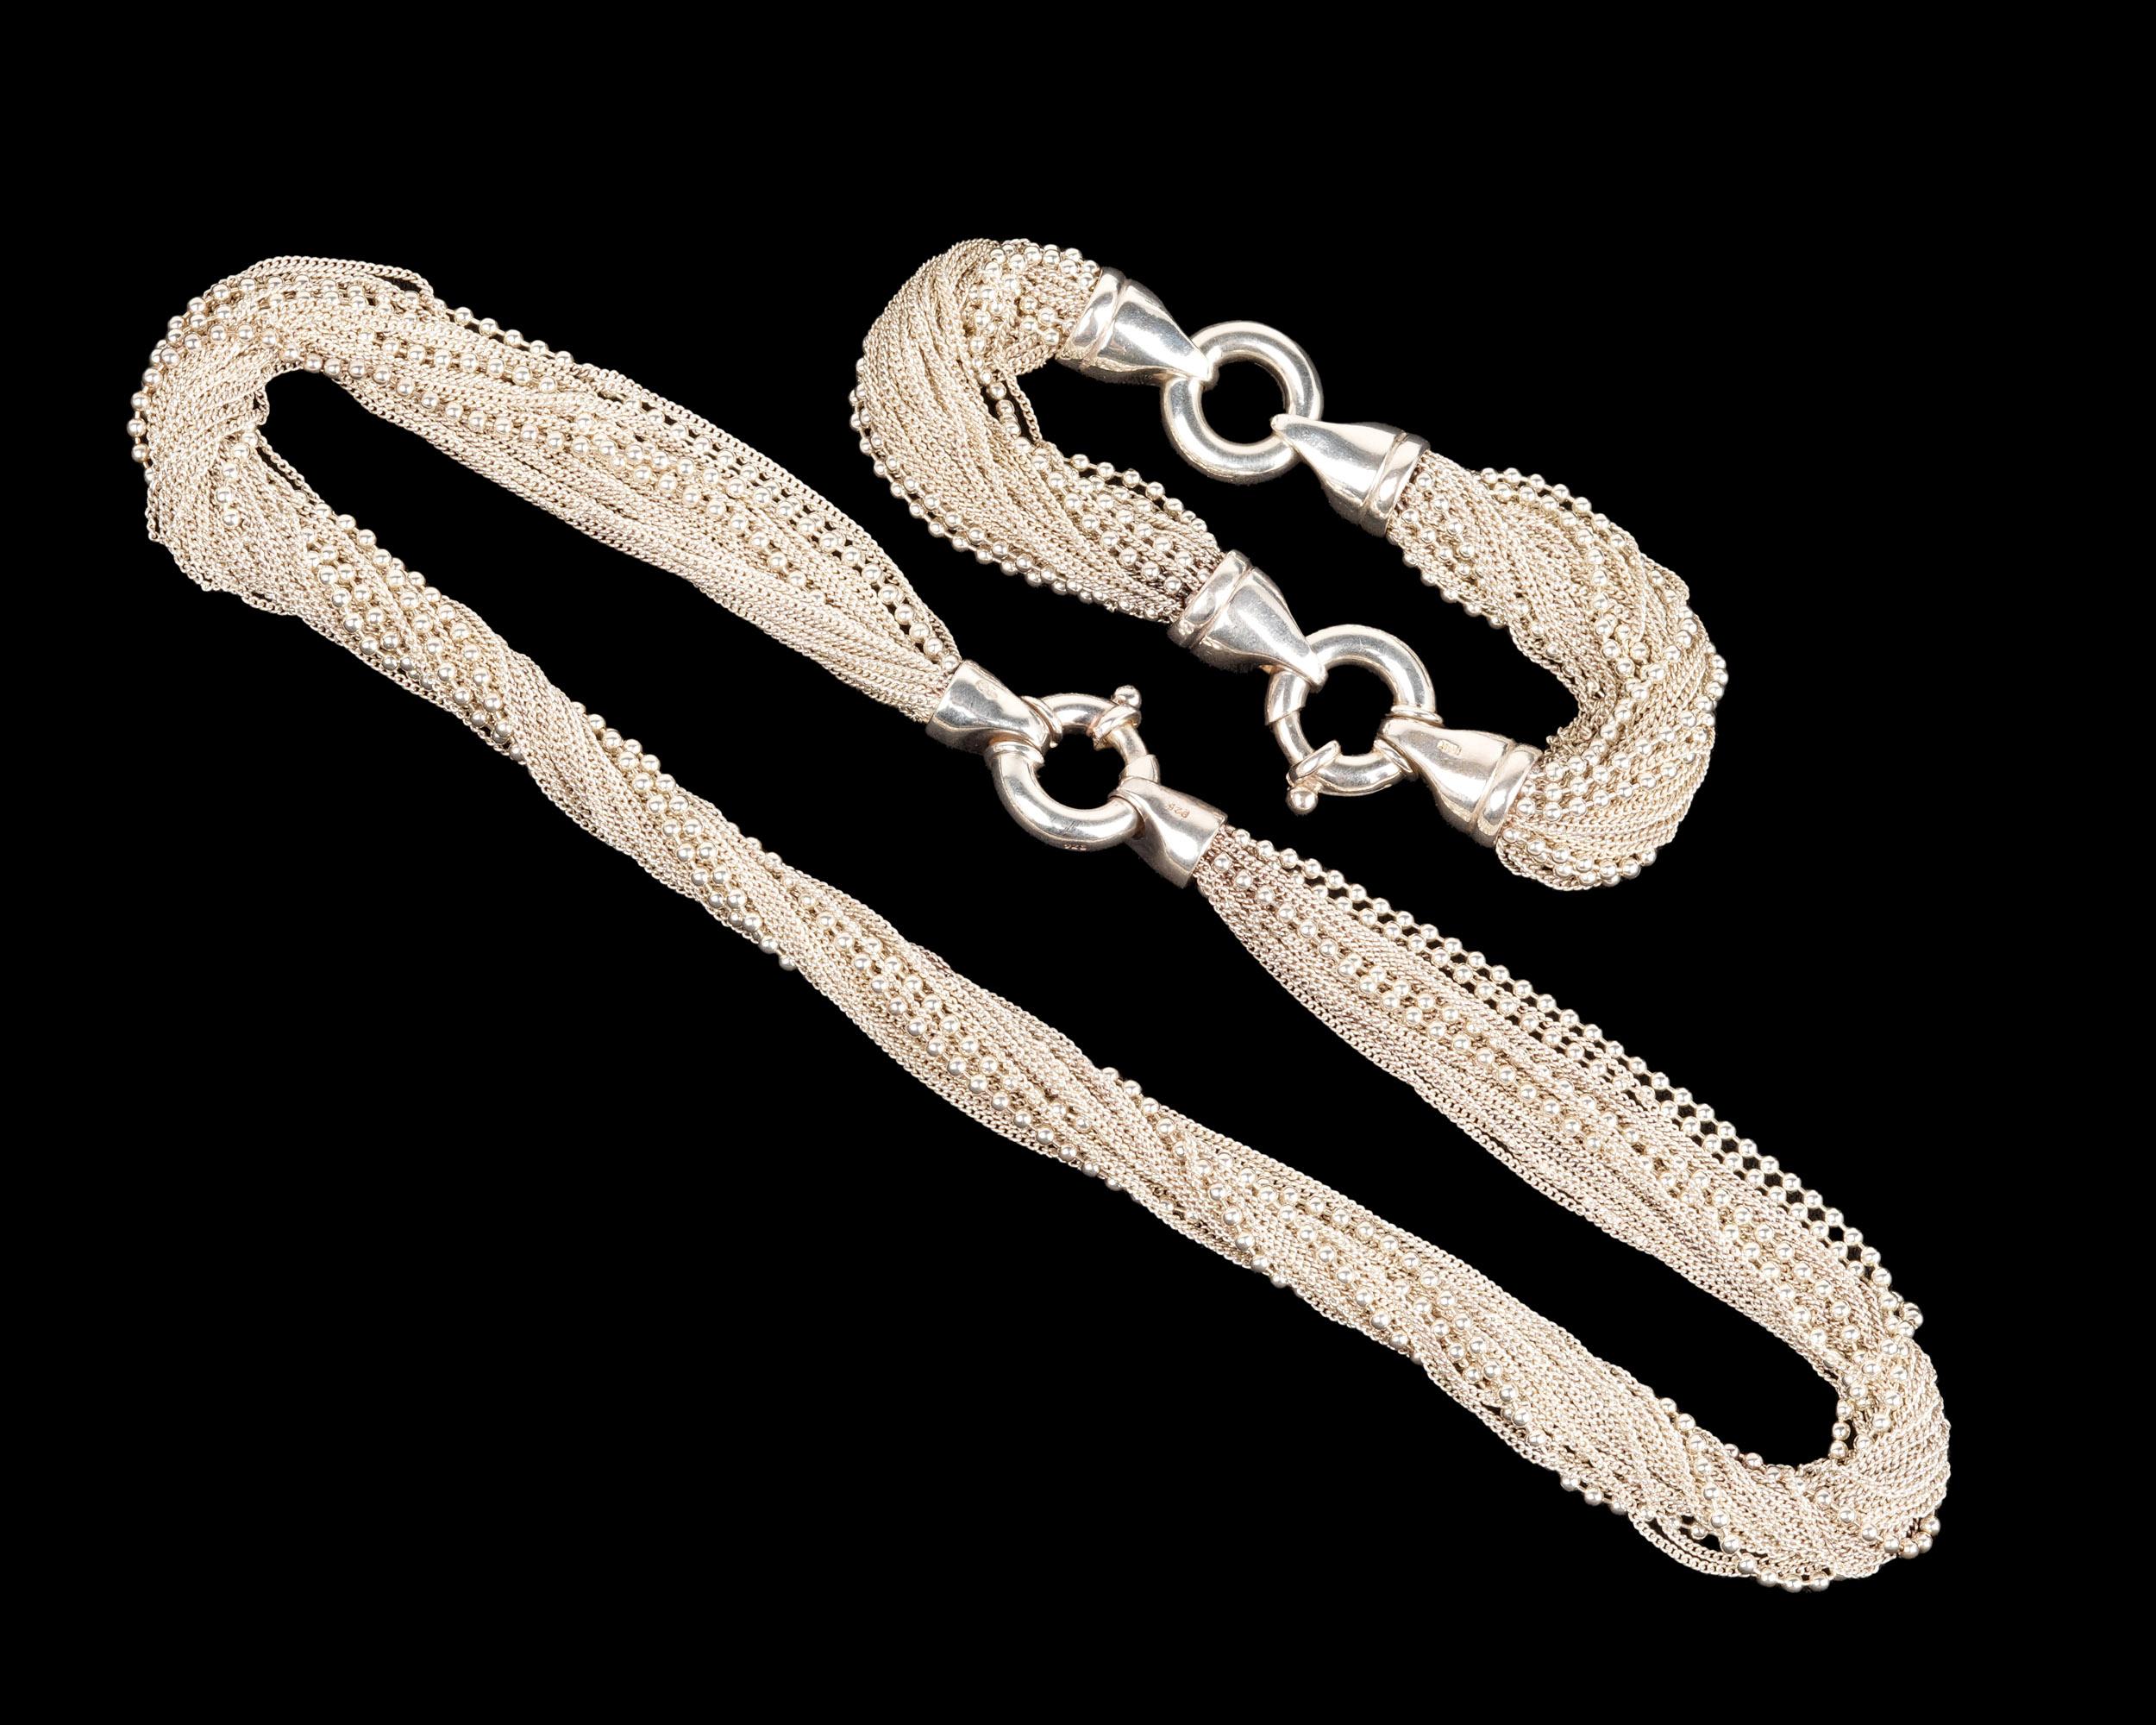 Sonya Ooten mehrsträngiges Set aus weißer Perlenkette und Mesh-Halskette und -Armband. Das Armband ist 7,5 cm lang und kann auch als Verlängerung für die Halskette verwendet werden. Jede ist mit der Ooten-Chiffre und 925 gekennzeichnet. Ungefähr 3,1